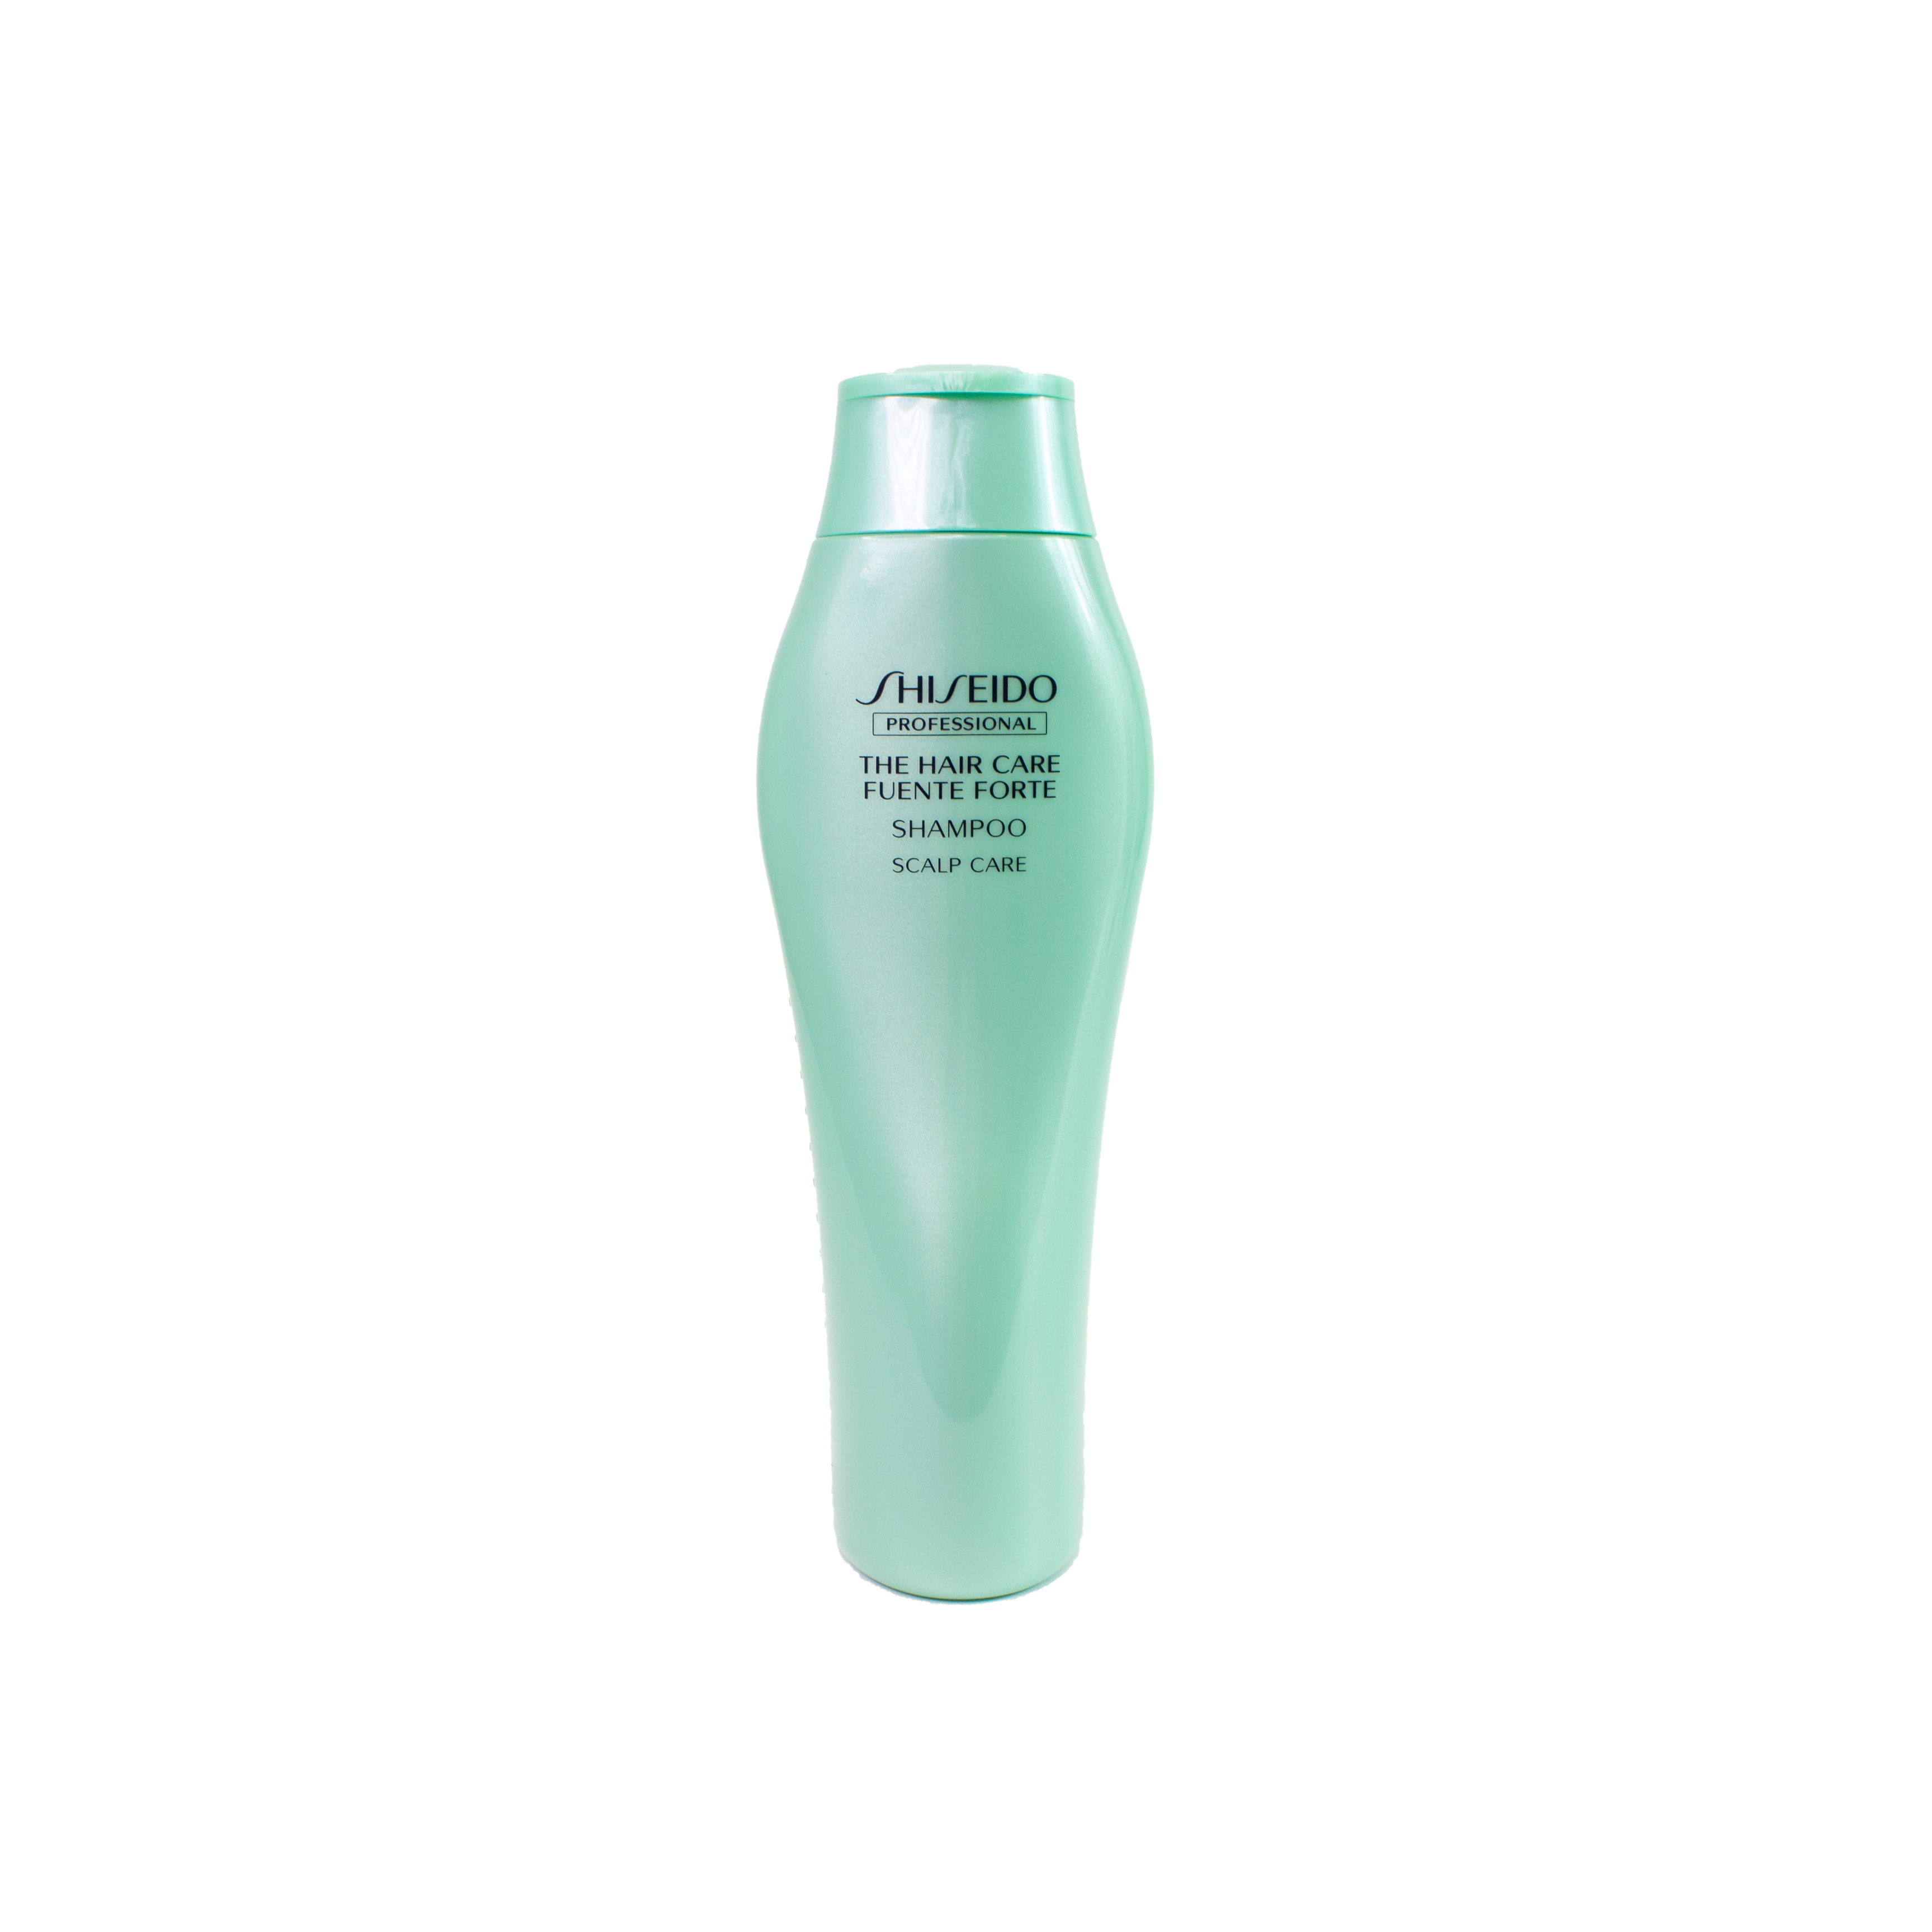 Shiseido THC Fuente Forte Shampoo